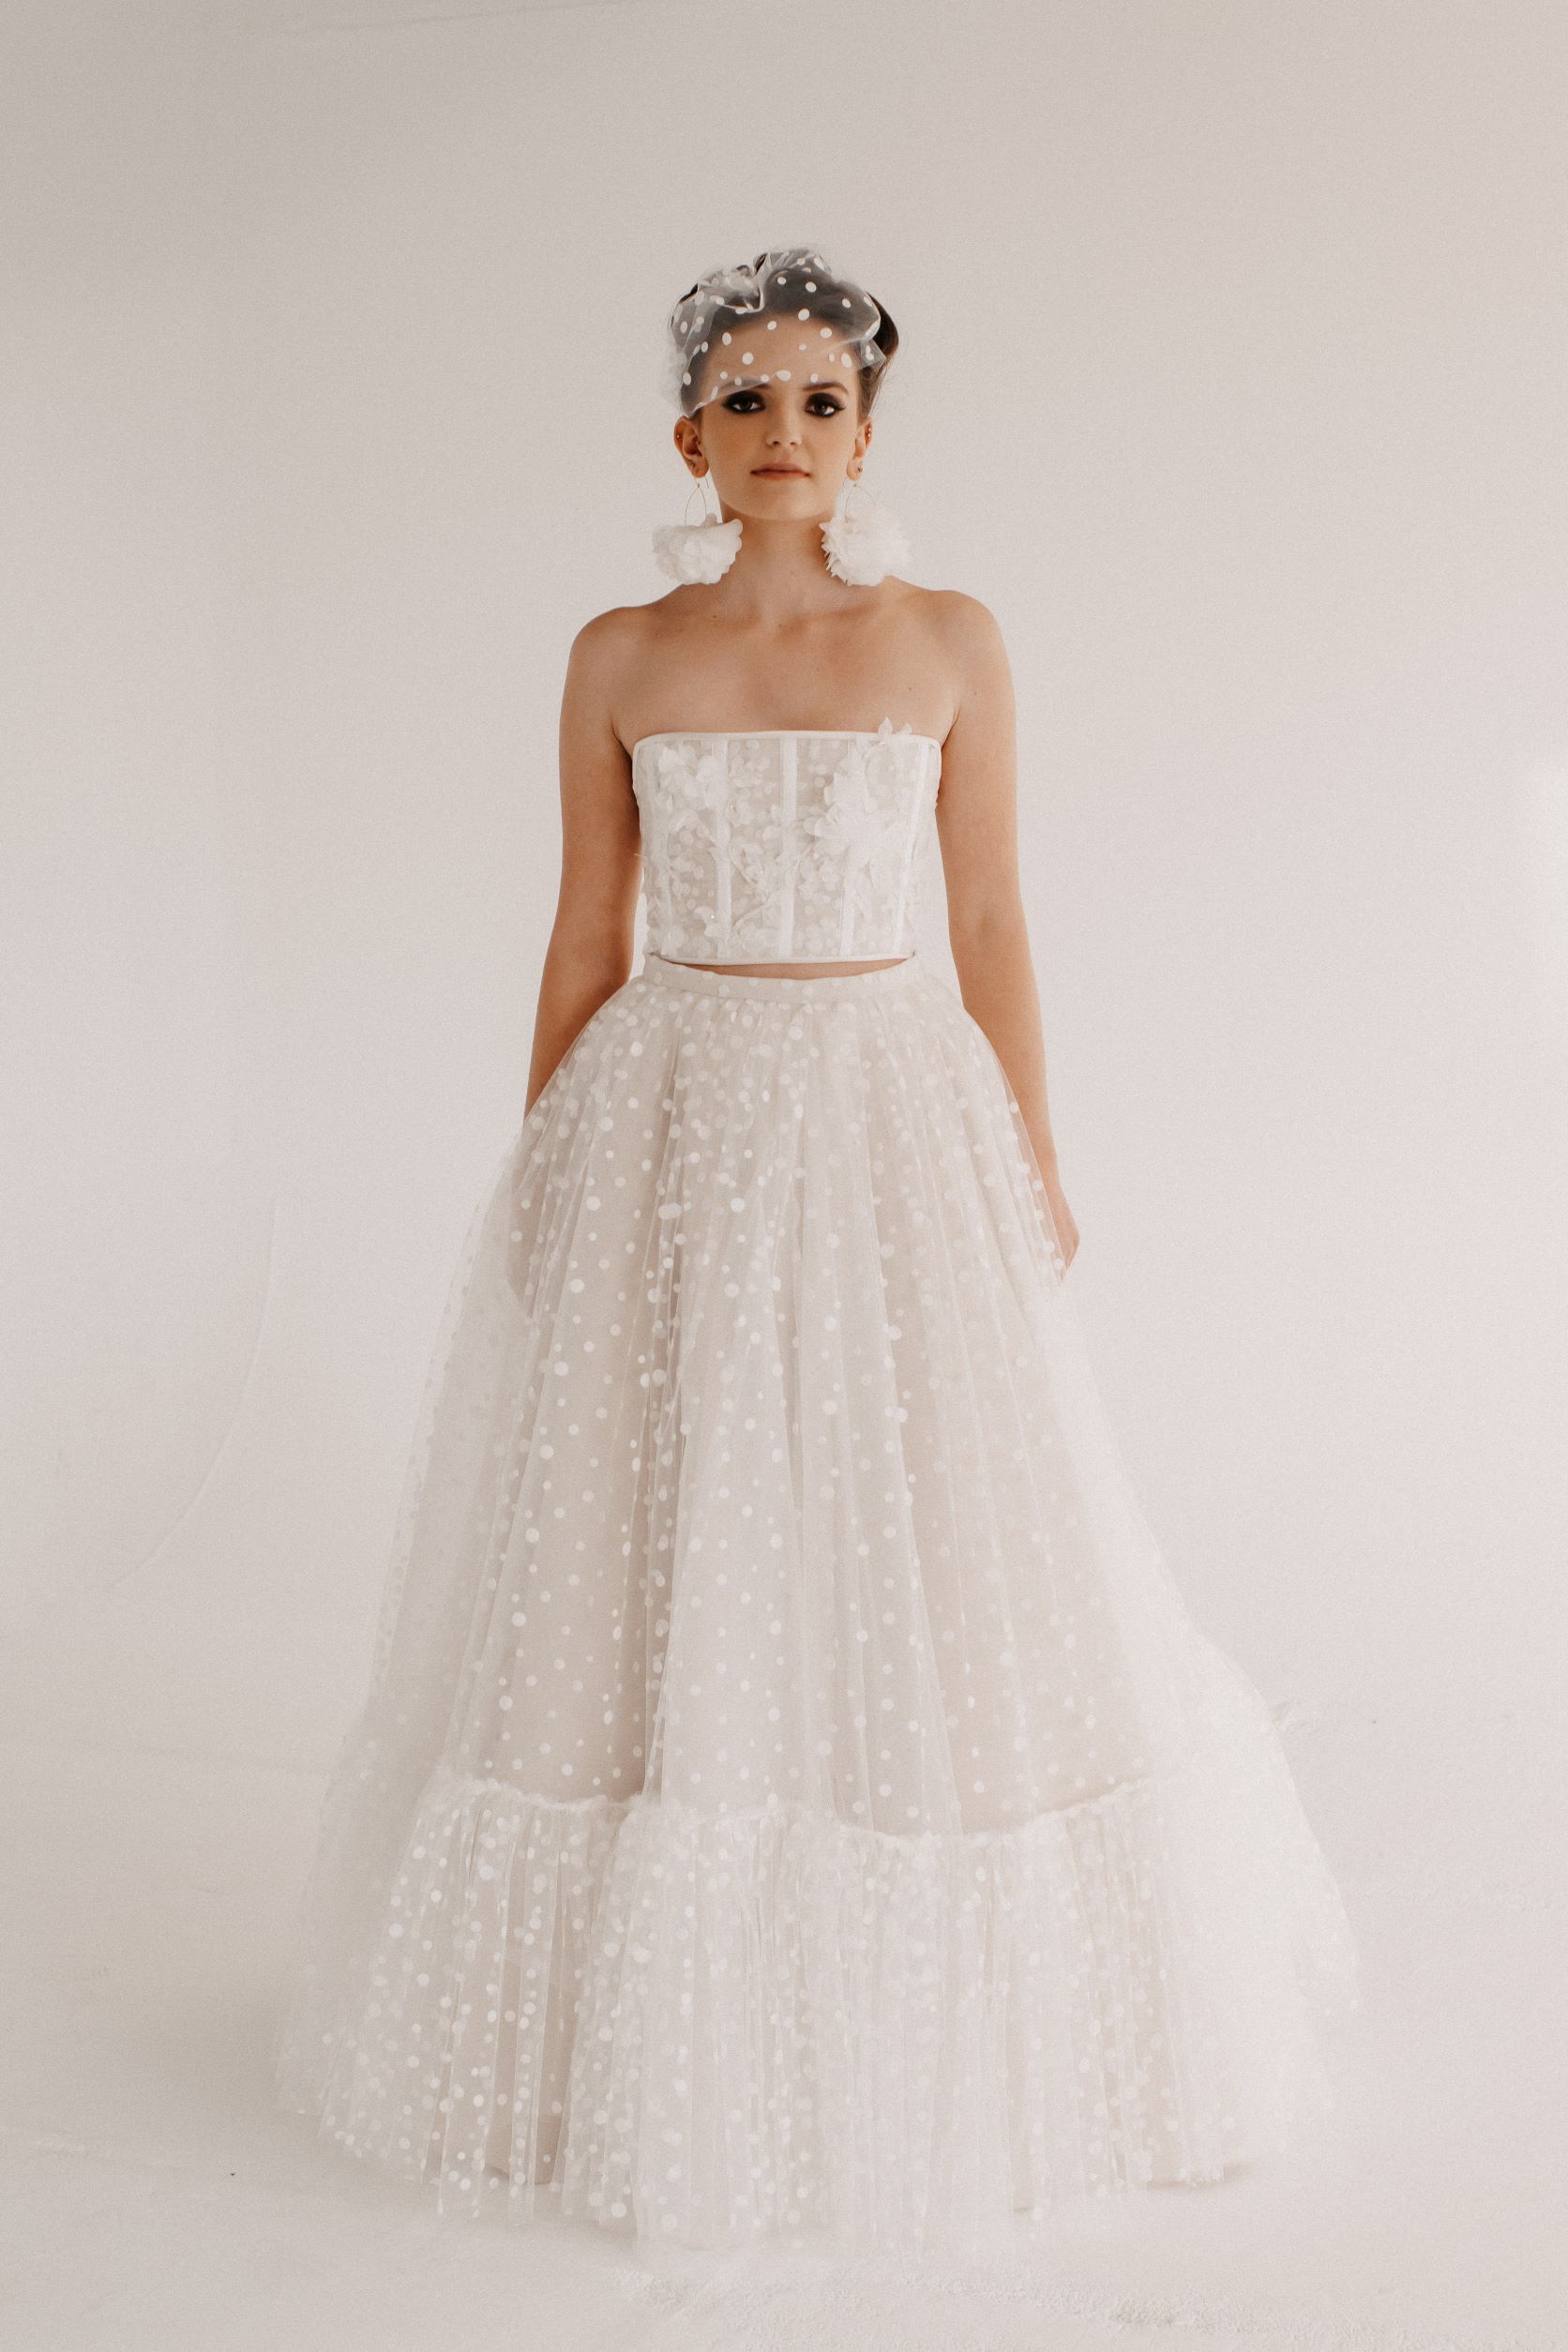 Alyce Jayne Bridal - Modern luxury fashion forward bridal wear